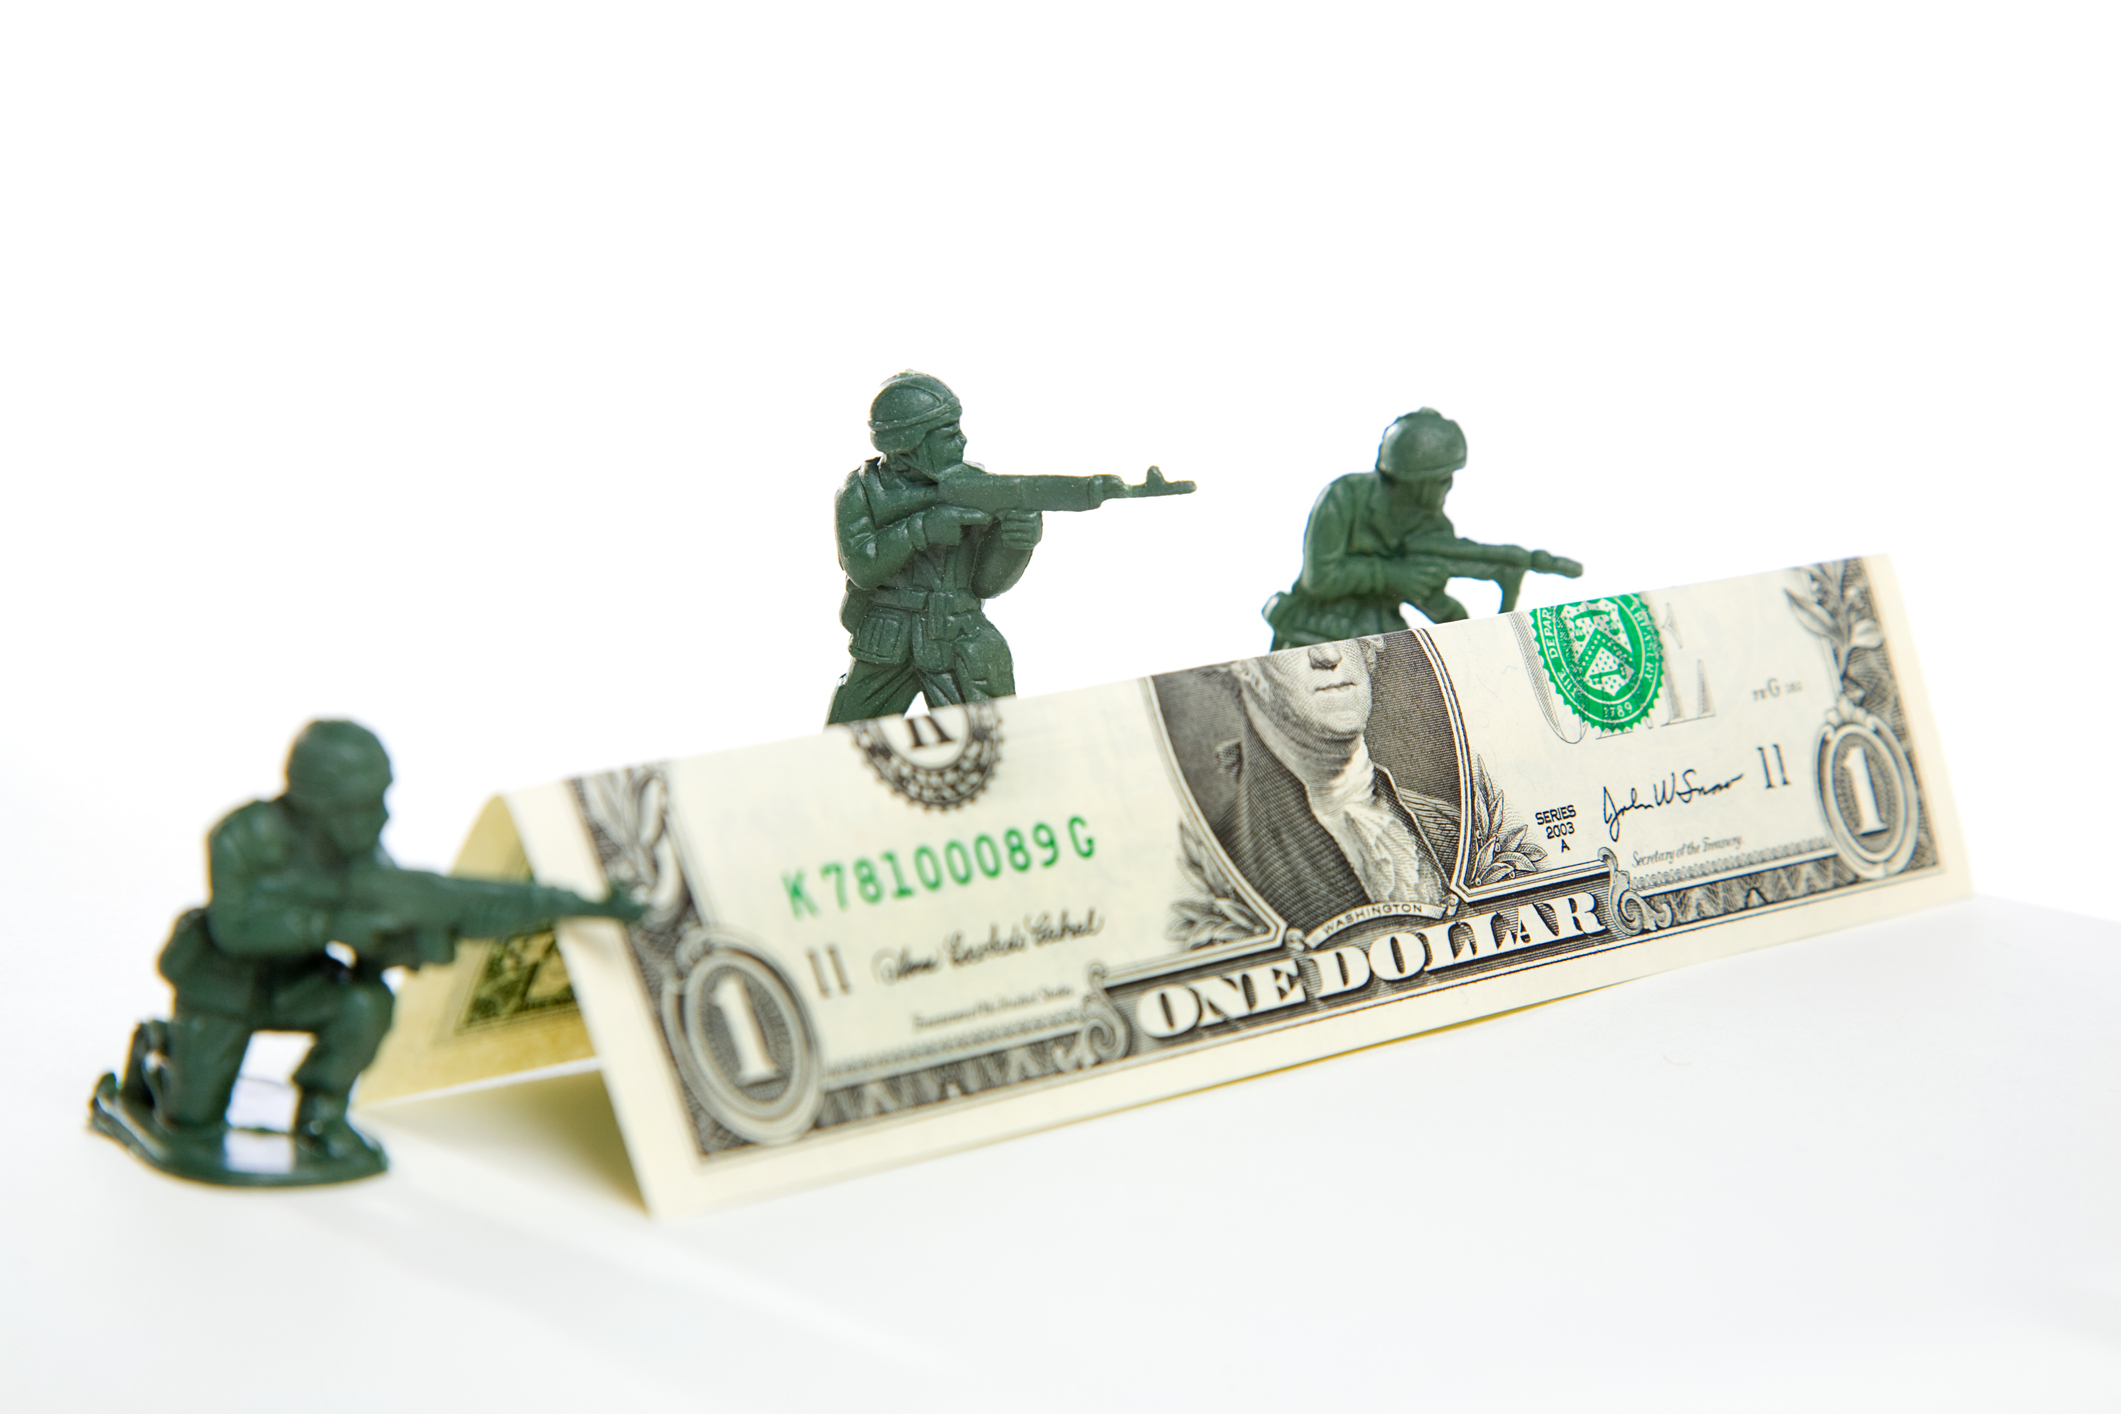 Katlanmış bir dolarlık banknottan oluşan bir barikatın üzerinden ateş eden üç plastik oyuncak asker